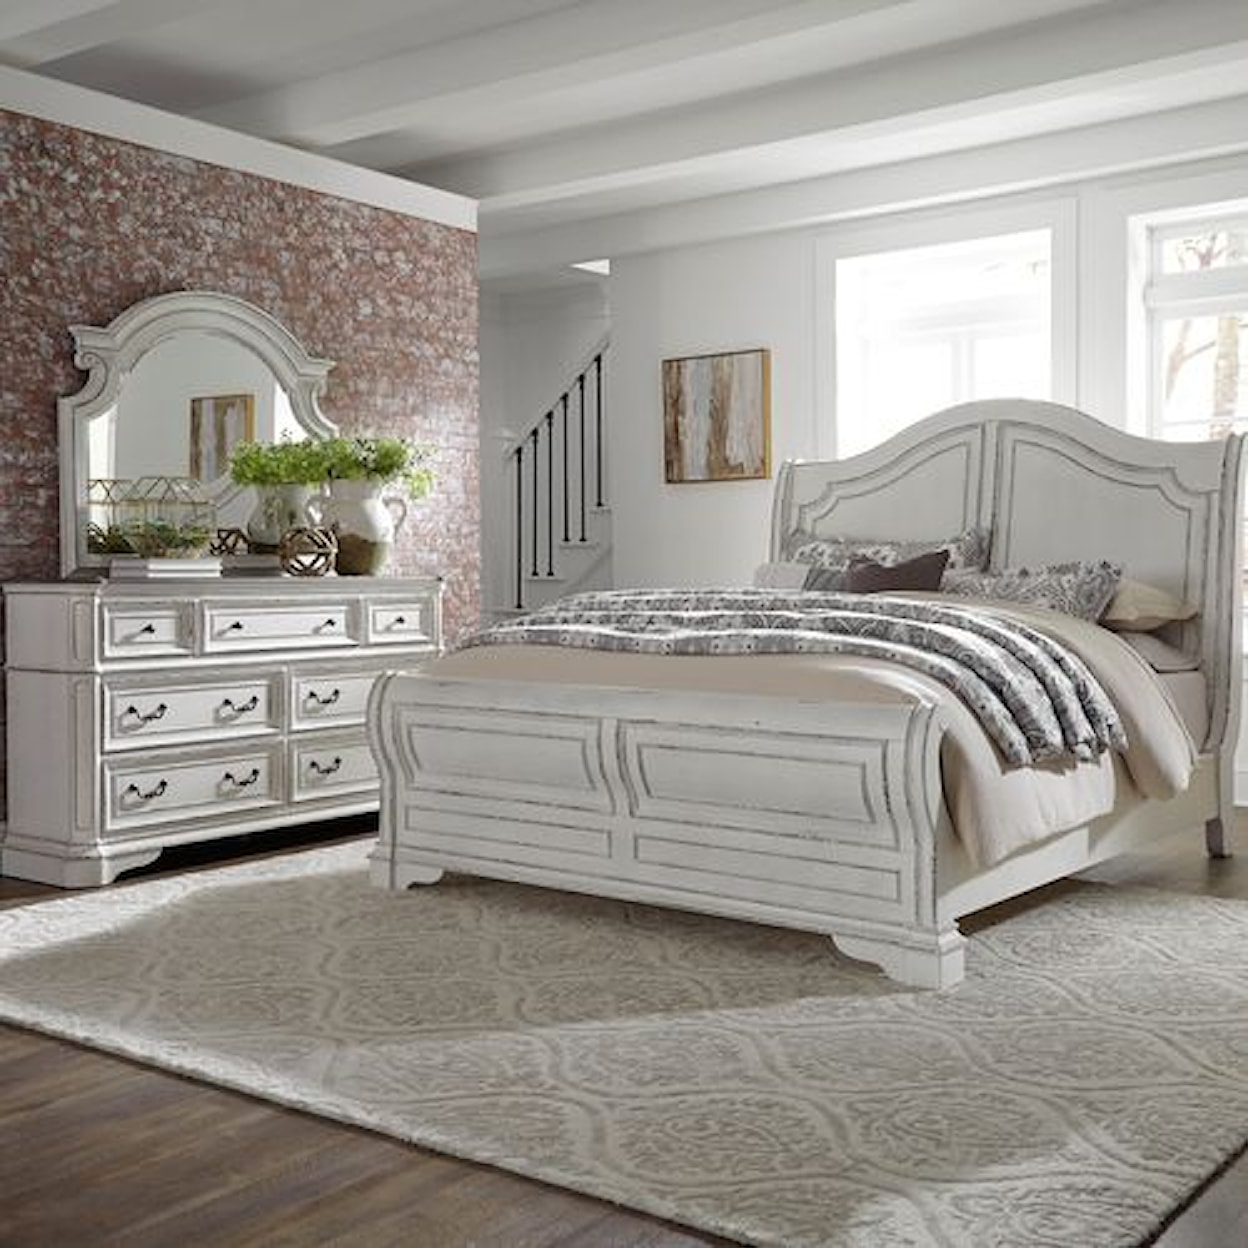 Liberty Furniture Magnolia Manor Queen Bedroom Group